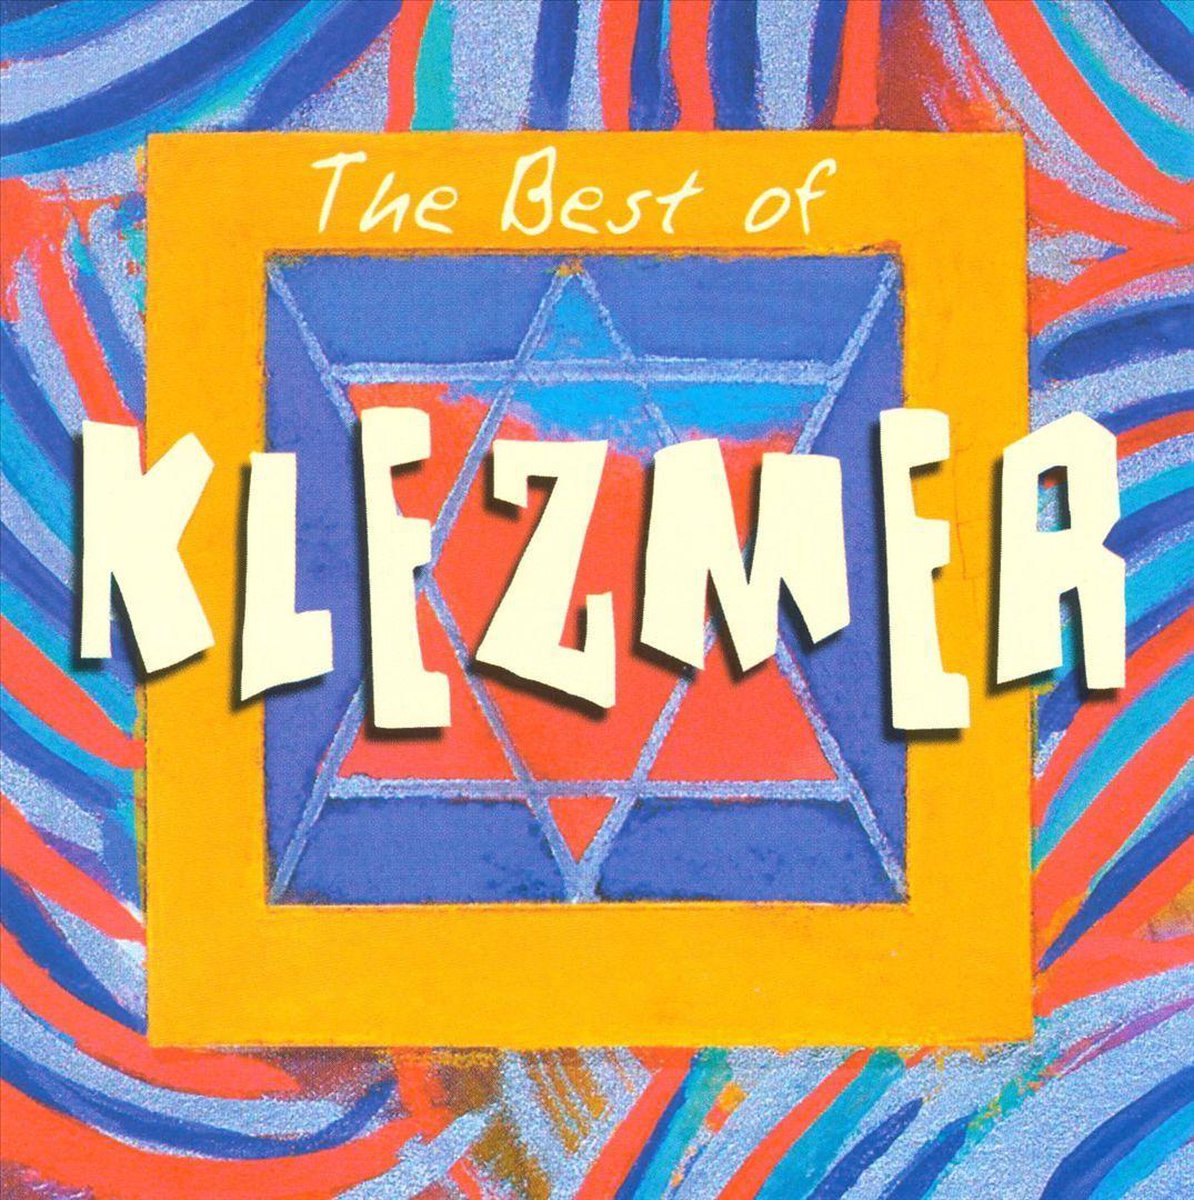 Best of Klezmer - various artists